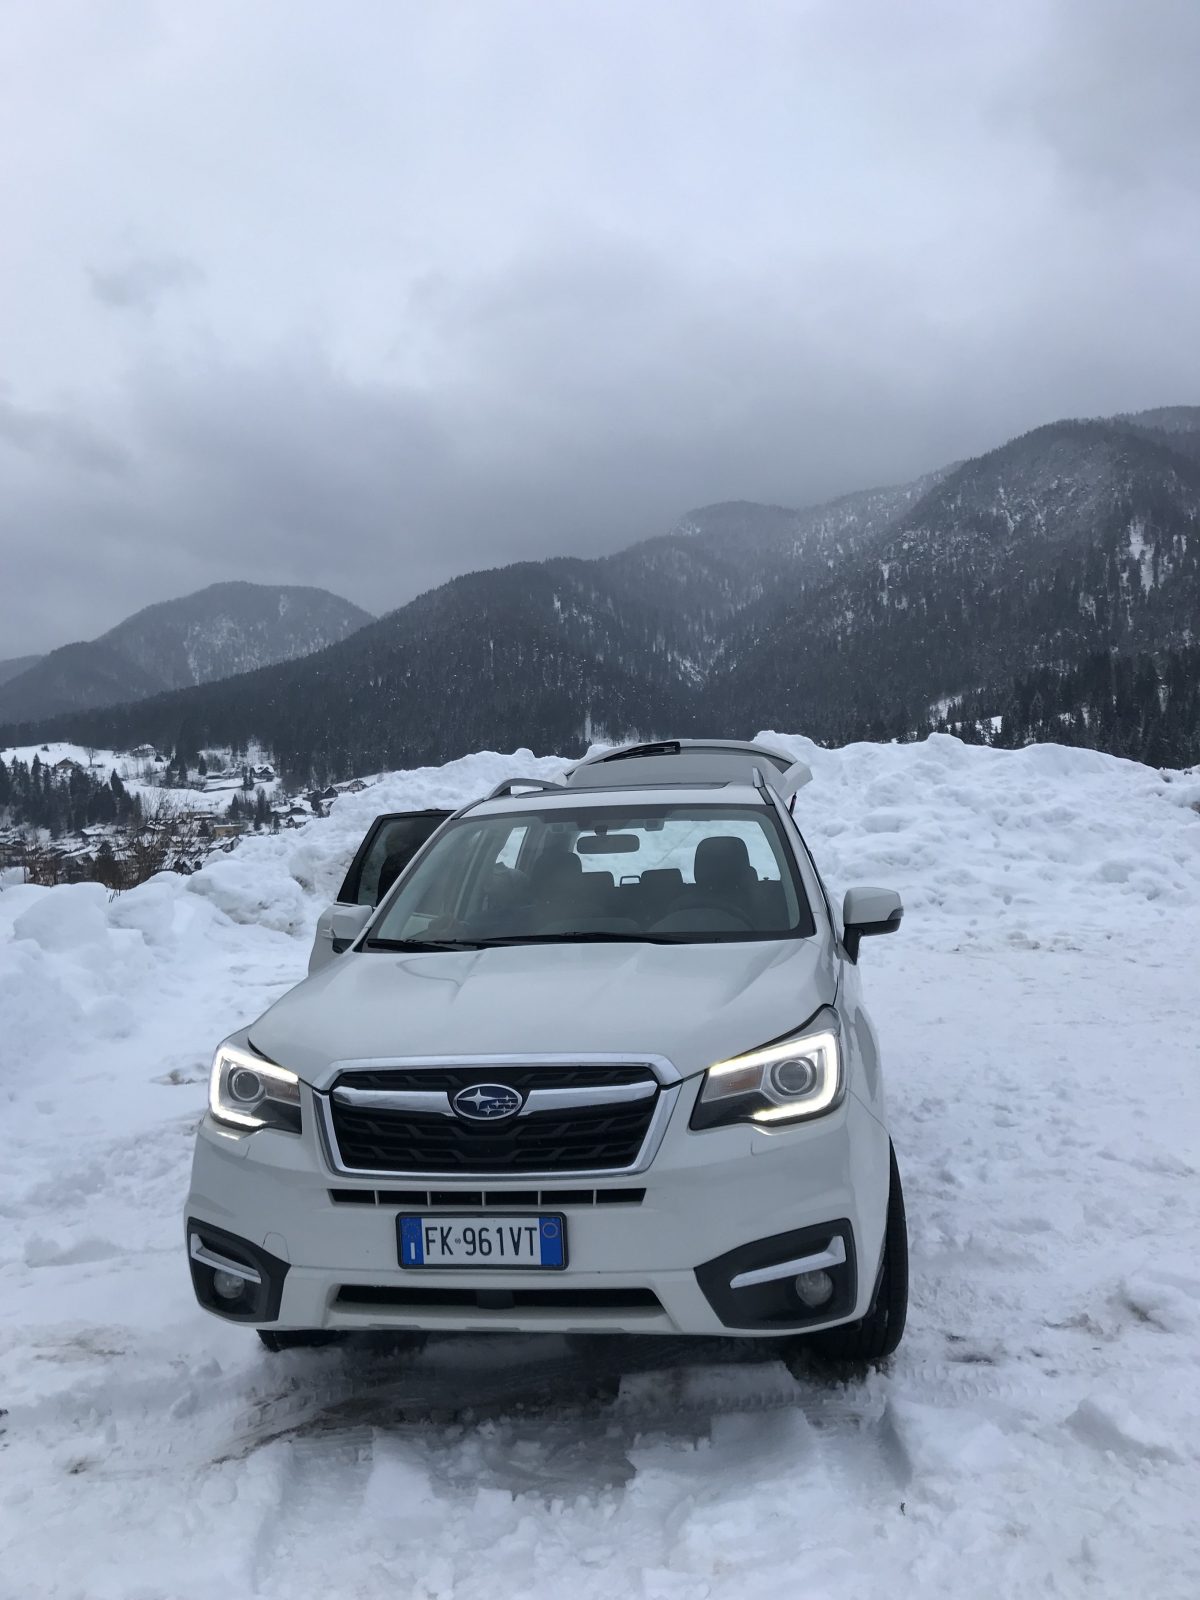 #Subaru Nuova #Forester #testdrive nel Tavisiano tra due ali di neve